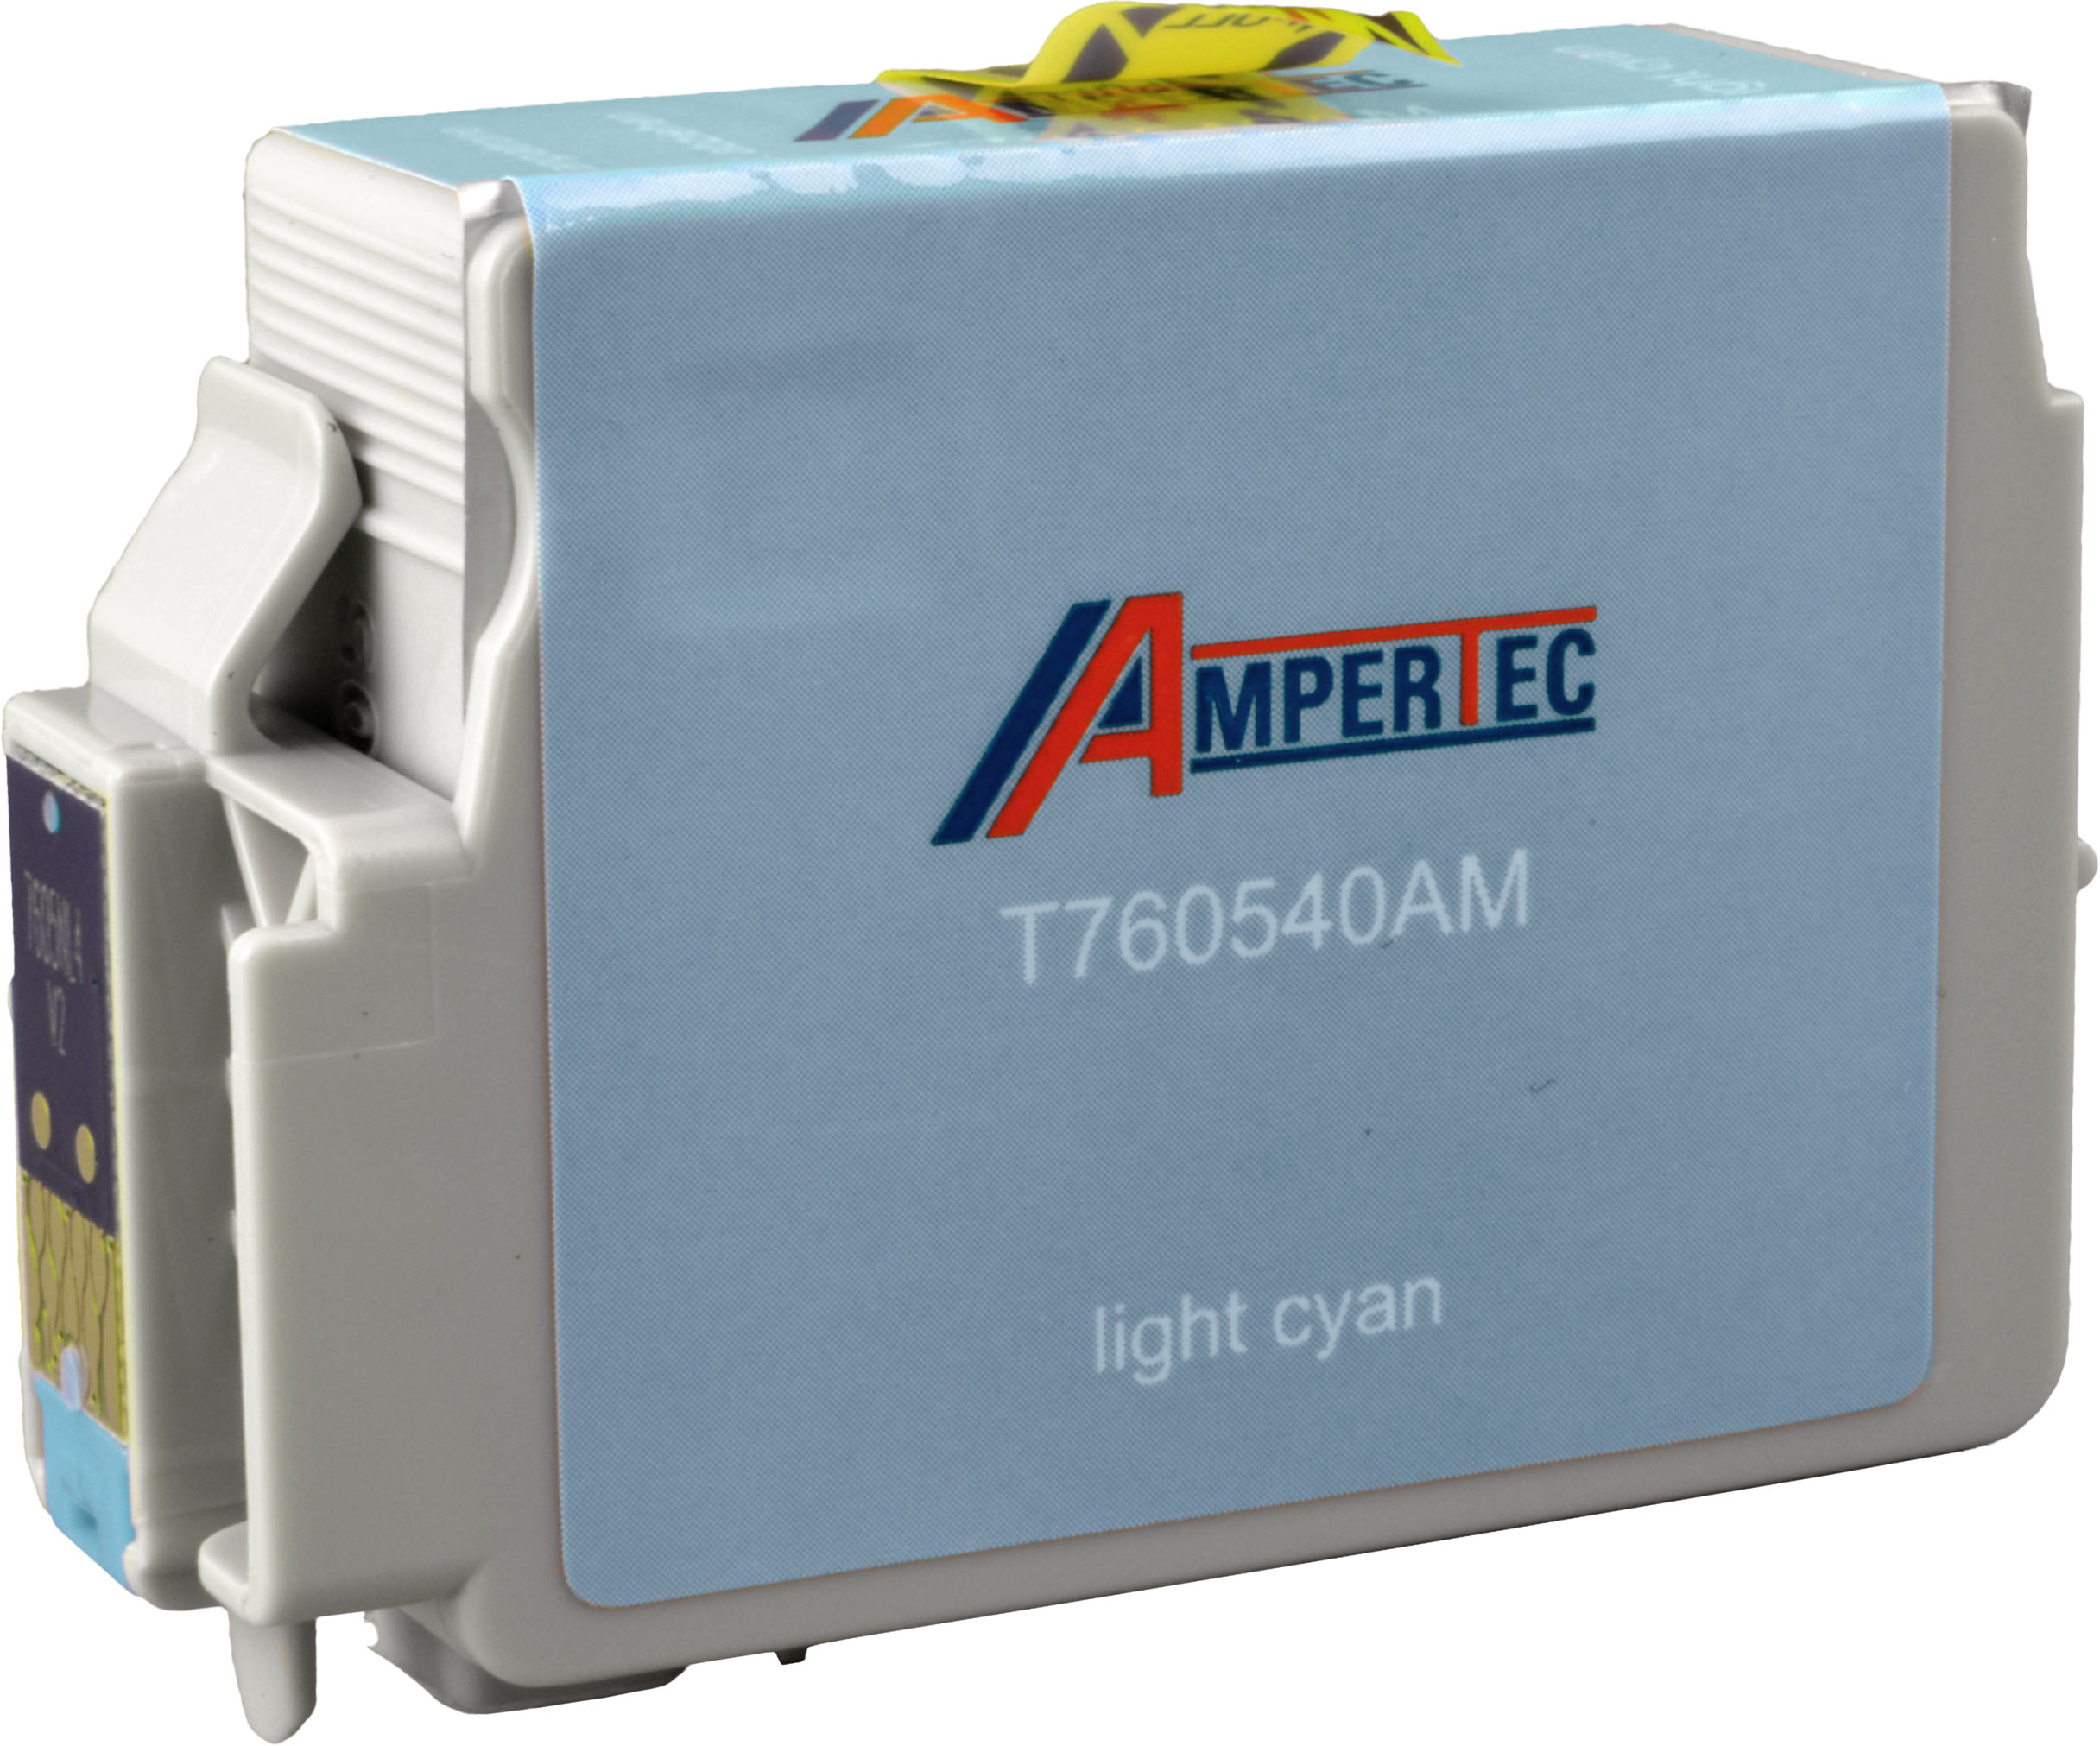 Ampertec Tinte für Epson C13T76054010  light cyan